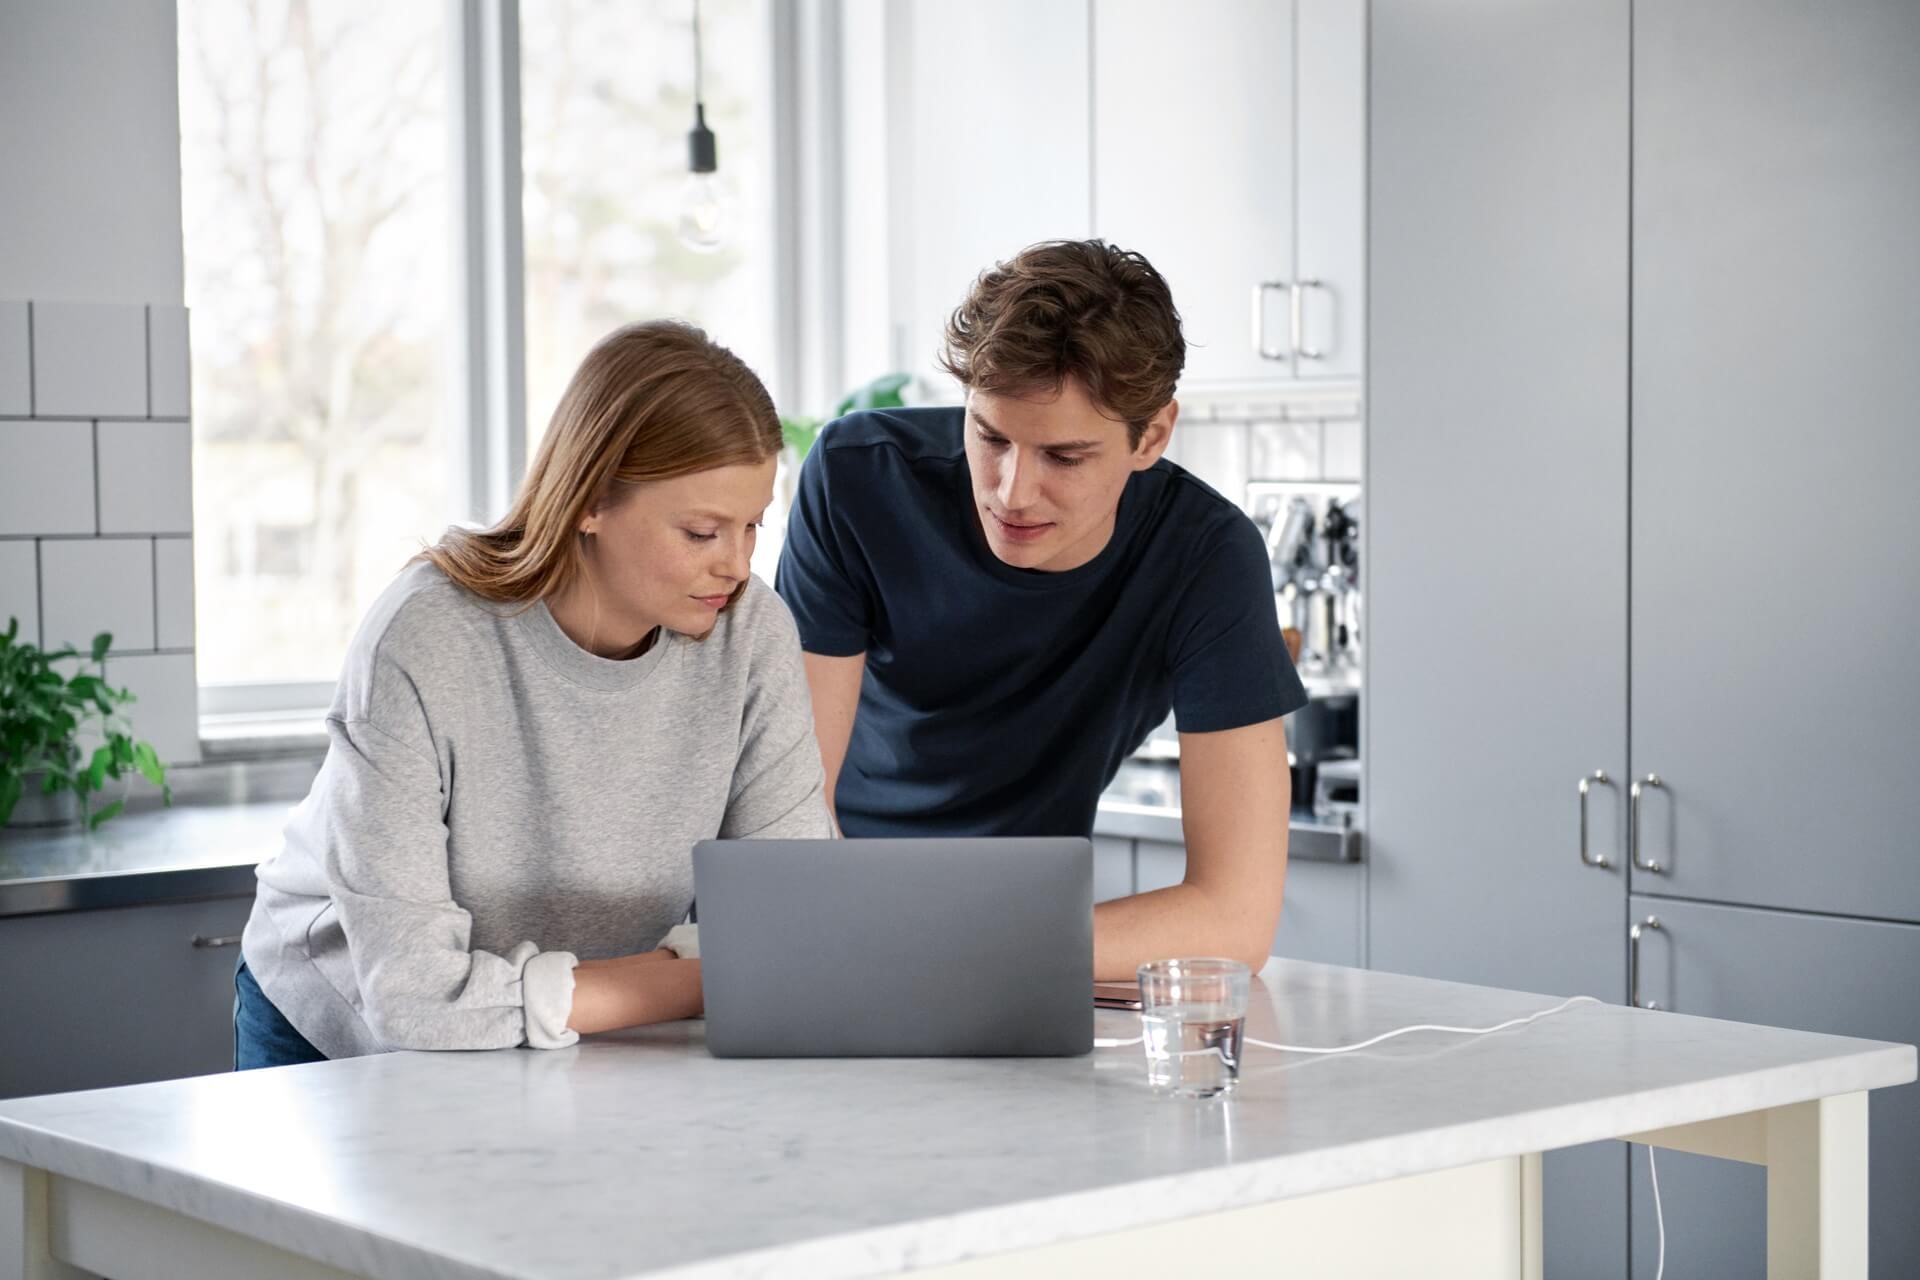 Jonge vrouw en man in hun keuken bekijken informatie over het prijsplafond op hun laptop